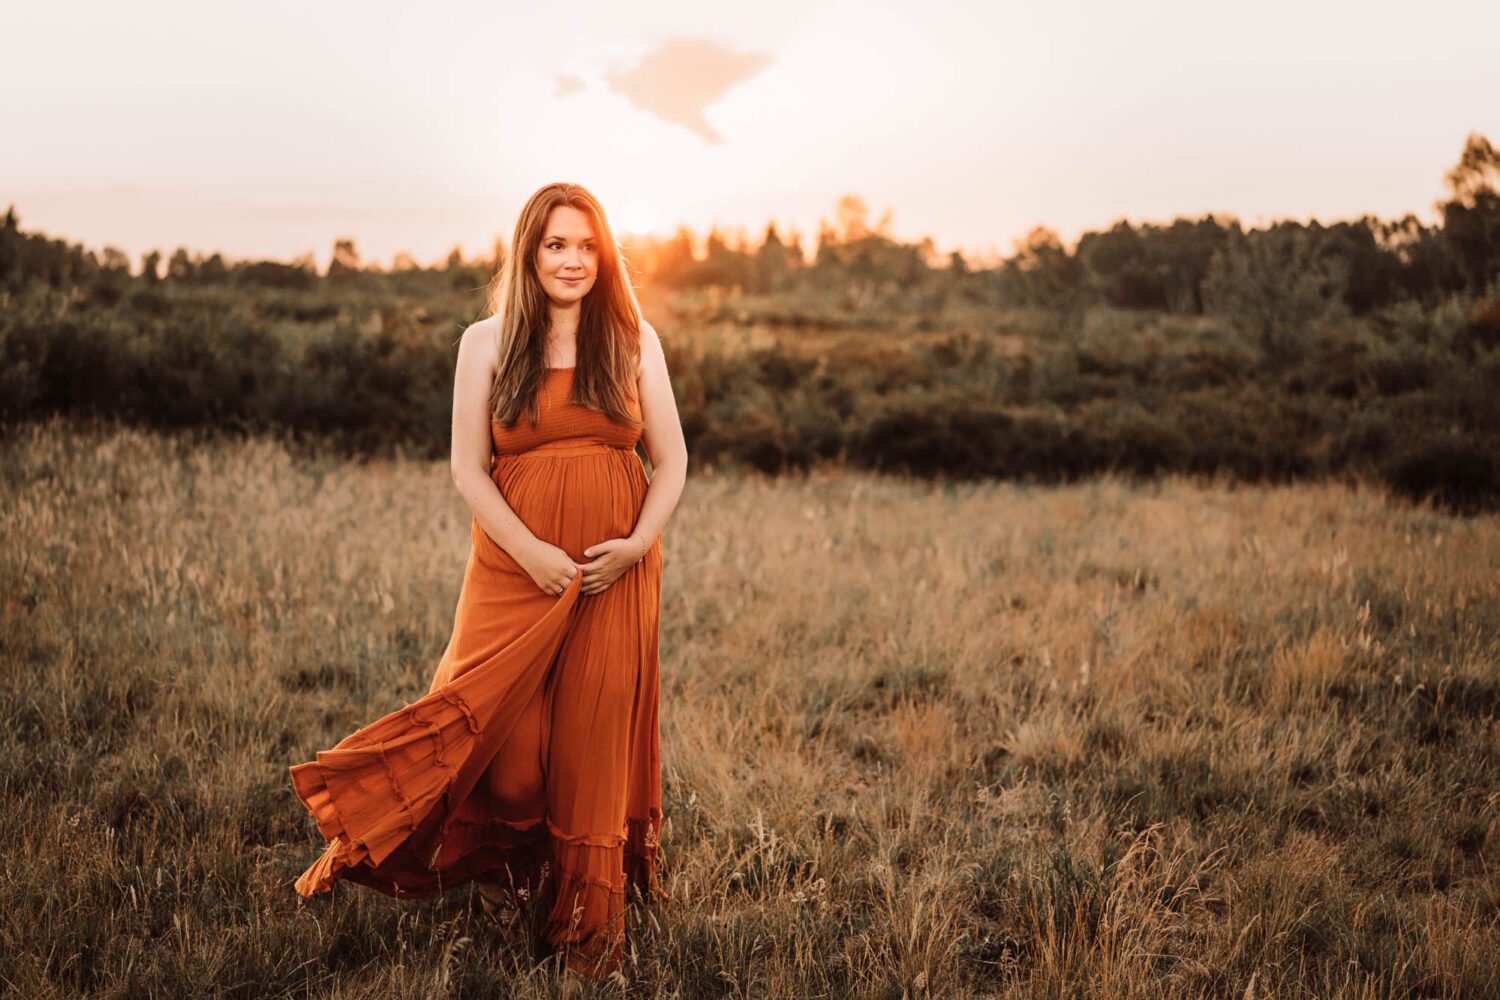 Schwangere im schönen langen Kleid strahlend und den Babybauch haltend läuft sie über eine Wiese im Abendlicht